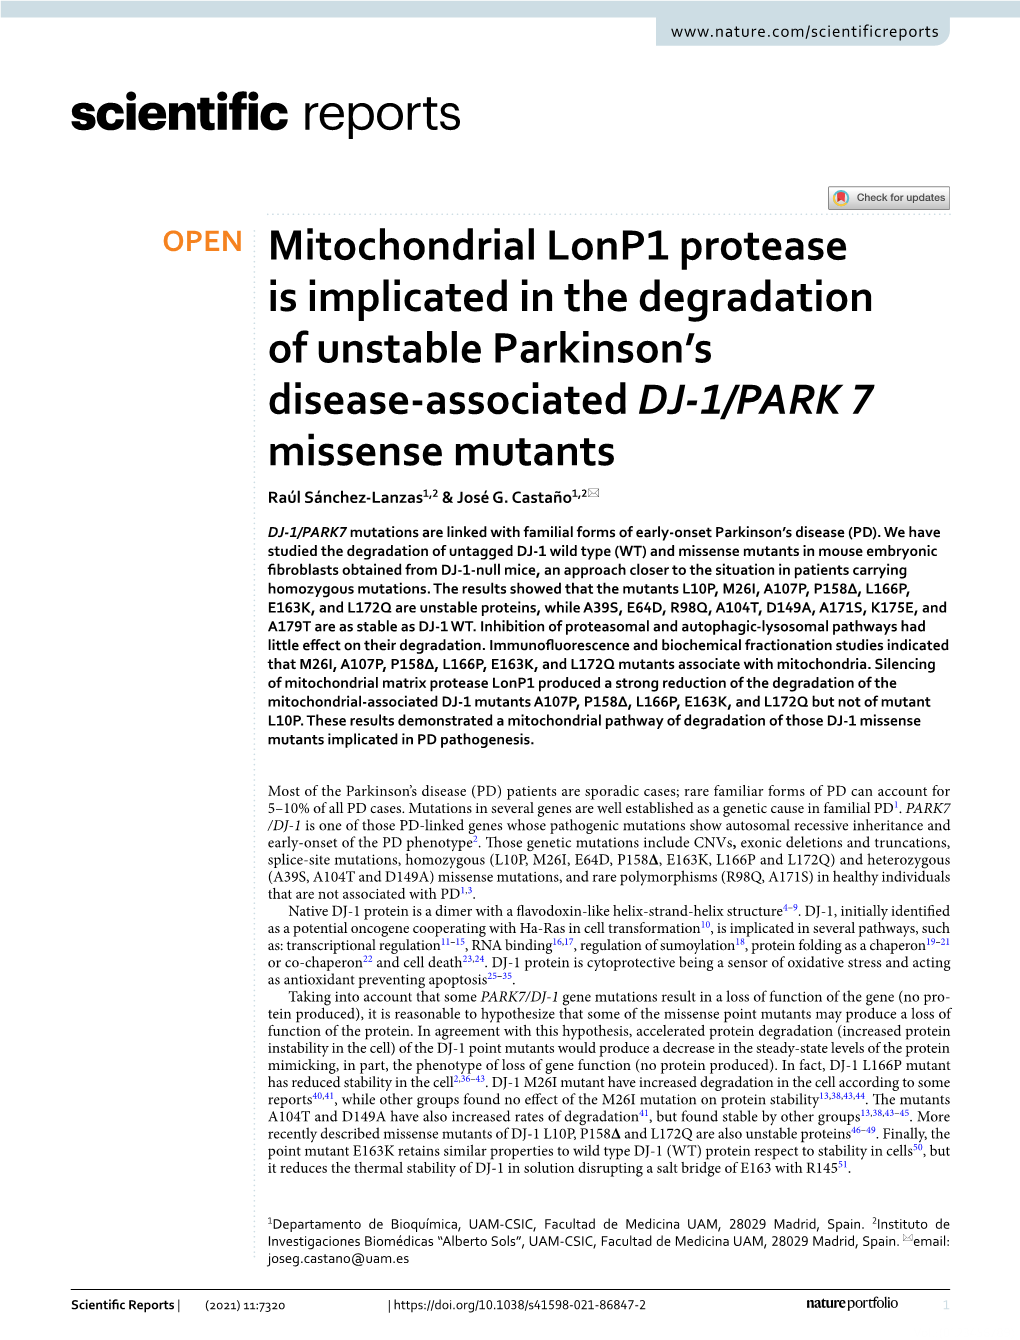 Mitochondrial Lonp1 Protease Is Implicated in the Degradation of Unstable Parkinson’S Disease‑Associated DJ‑1/PARK 7 Missense Mutants Raúl Sánchez‑Lanzas1,2 & José G